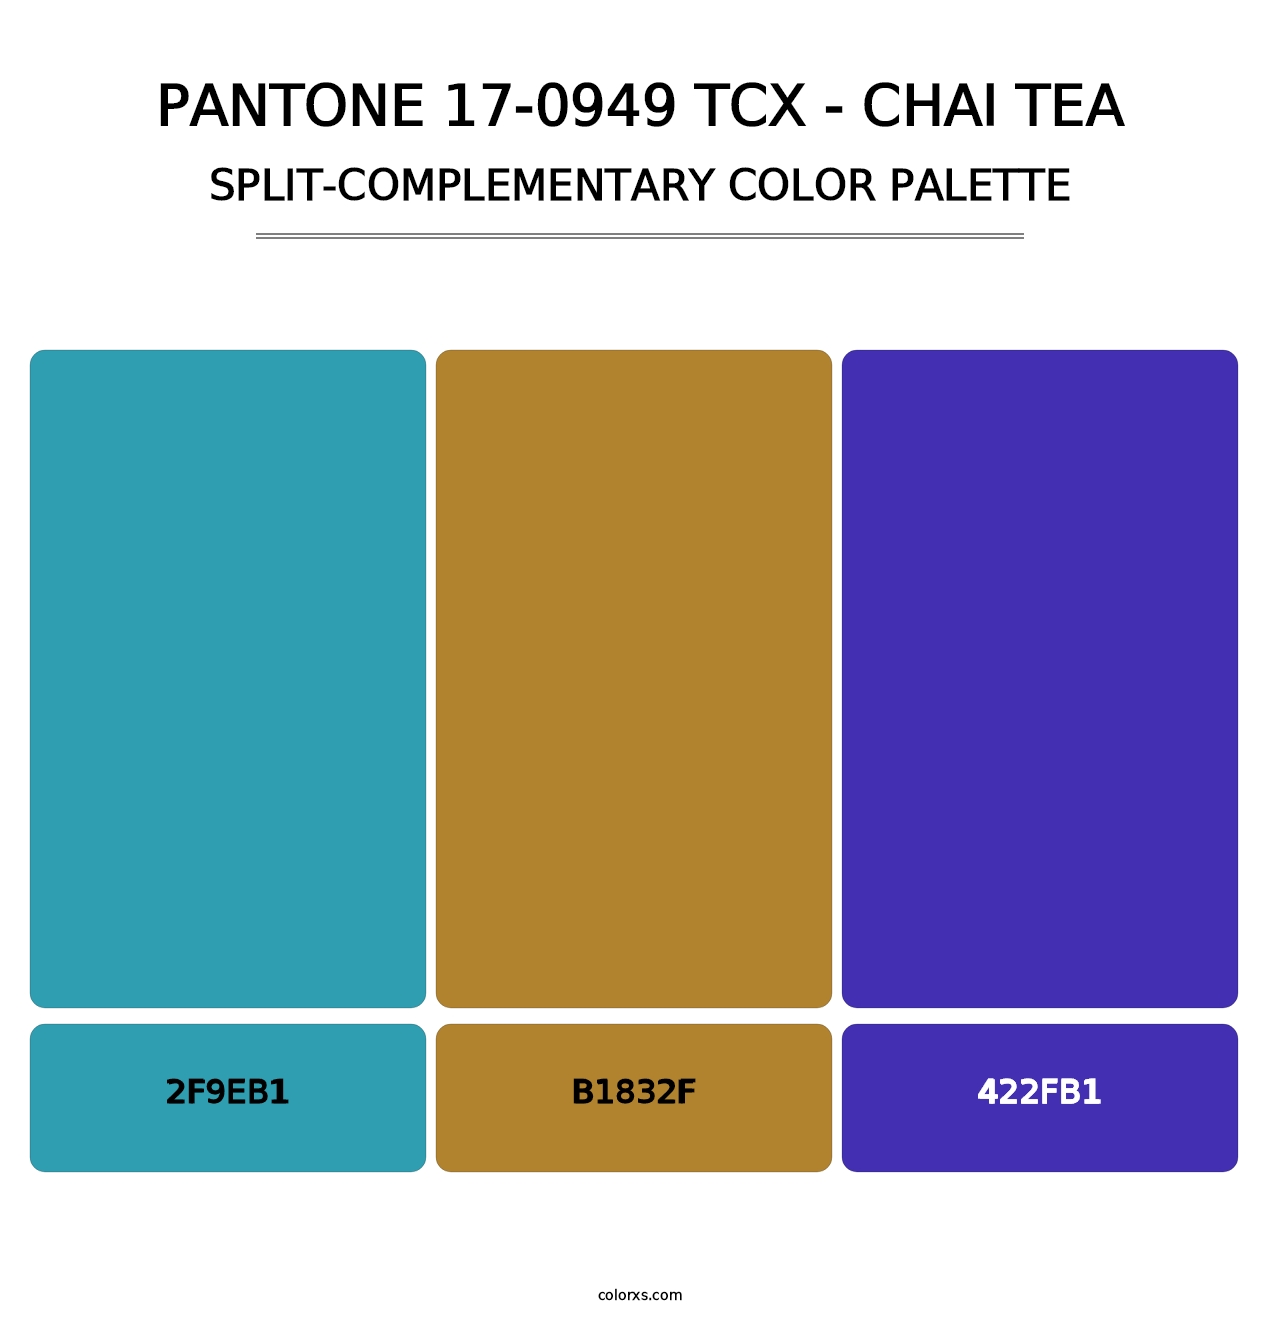 PANTONE 17-0949 TCX - Chai Tea - Split-Complementary Color Palette